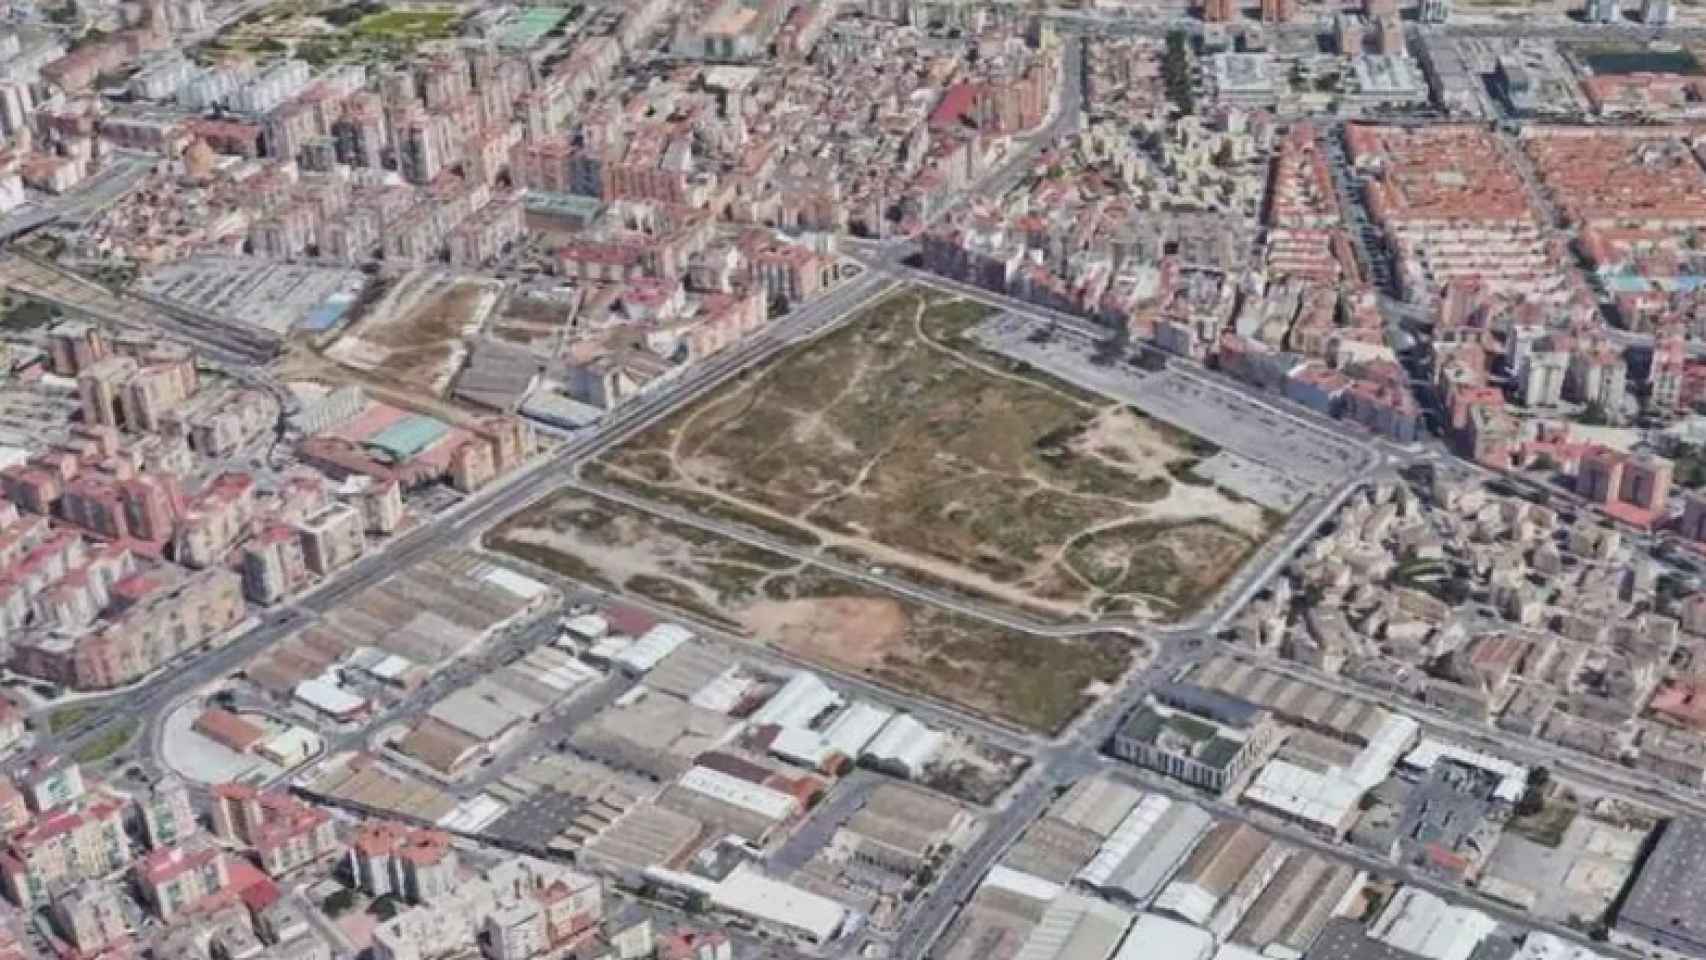 Vista aérea de los antiguos terrenos de Repsol.